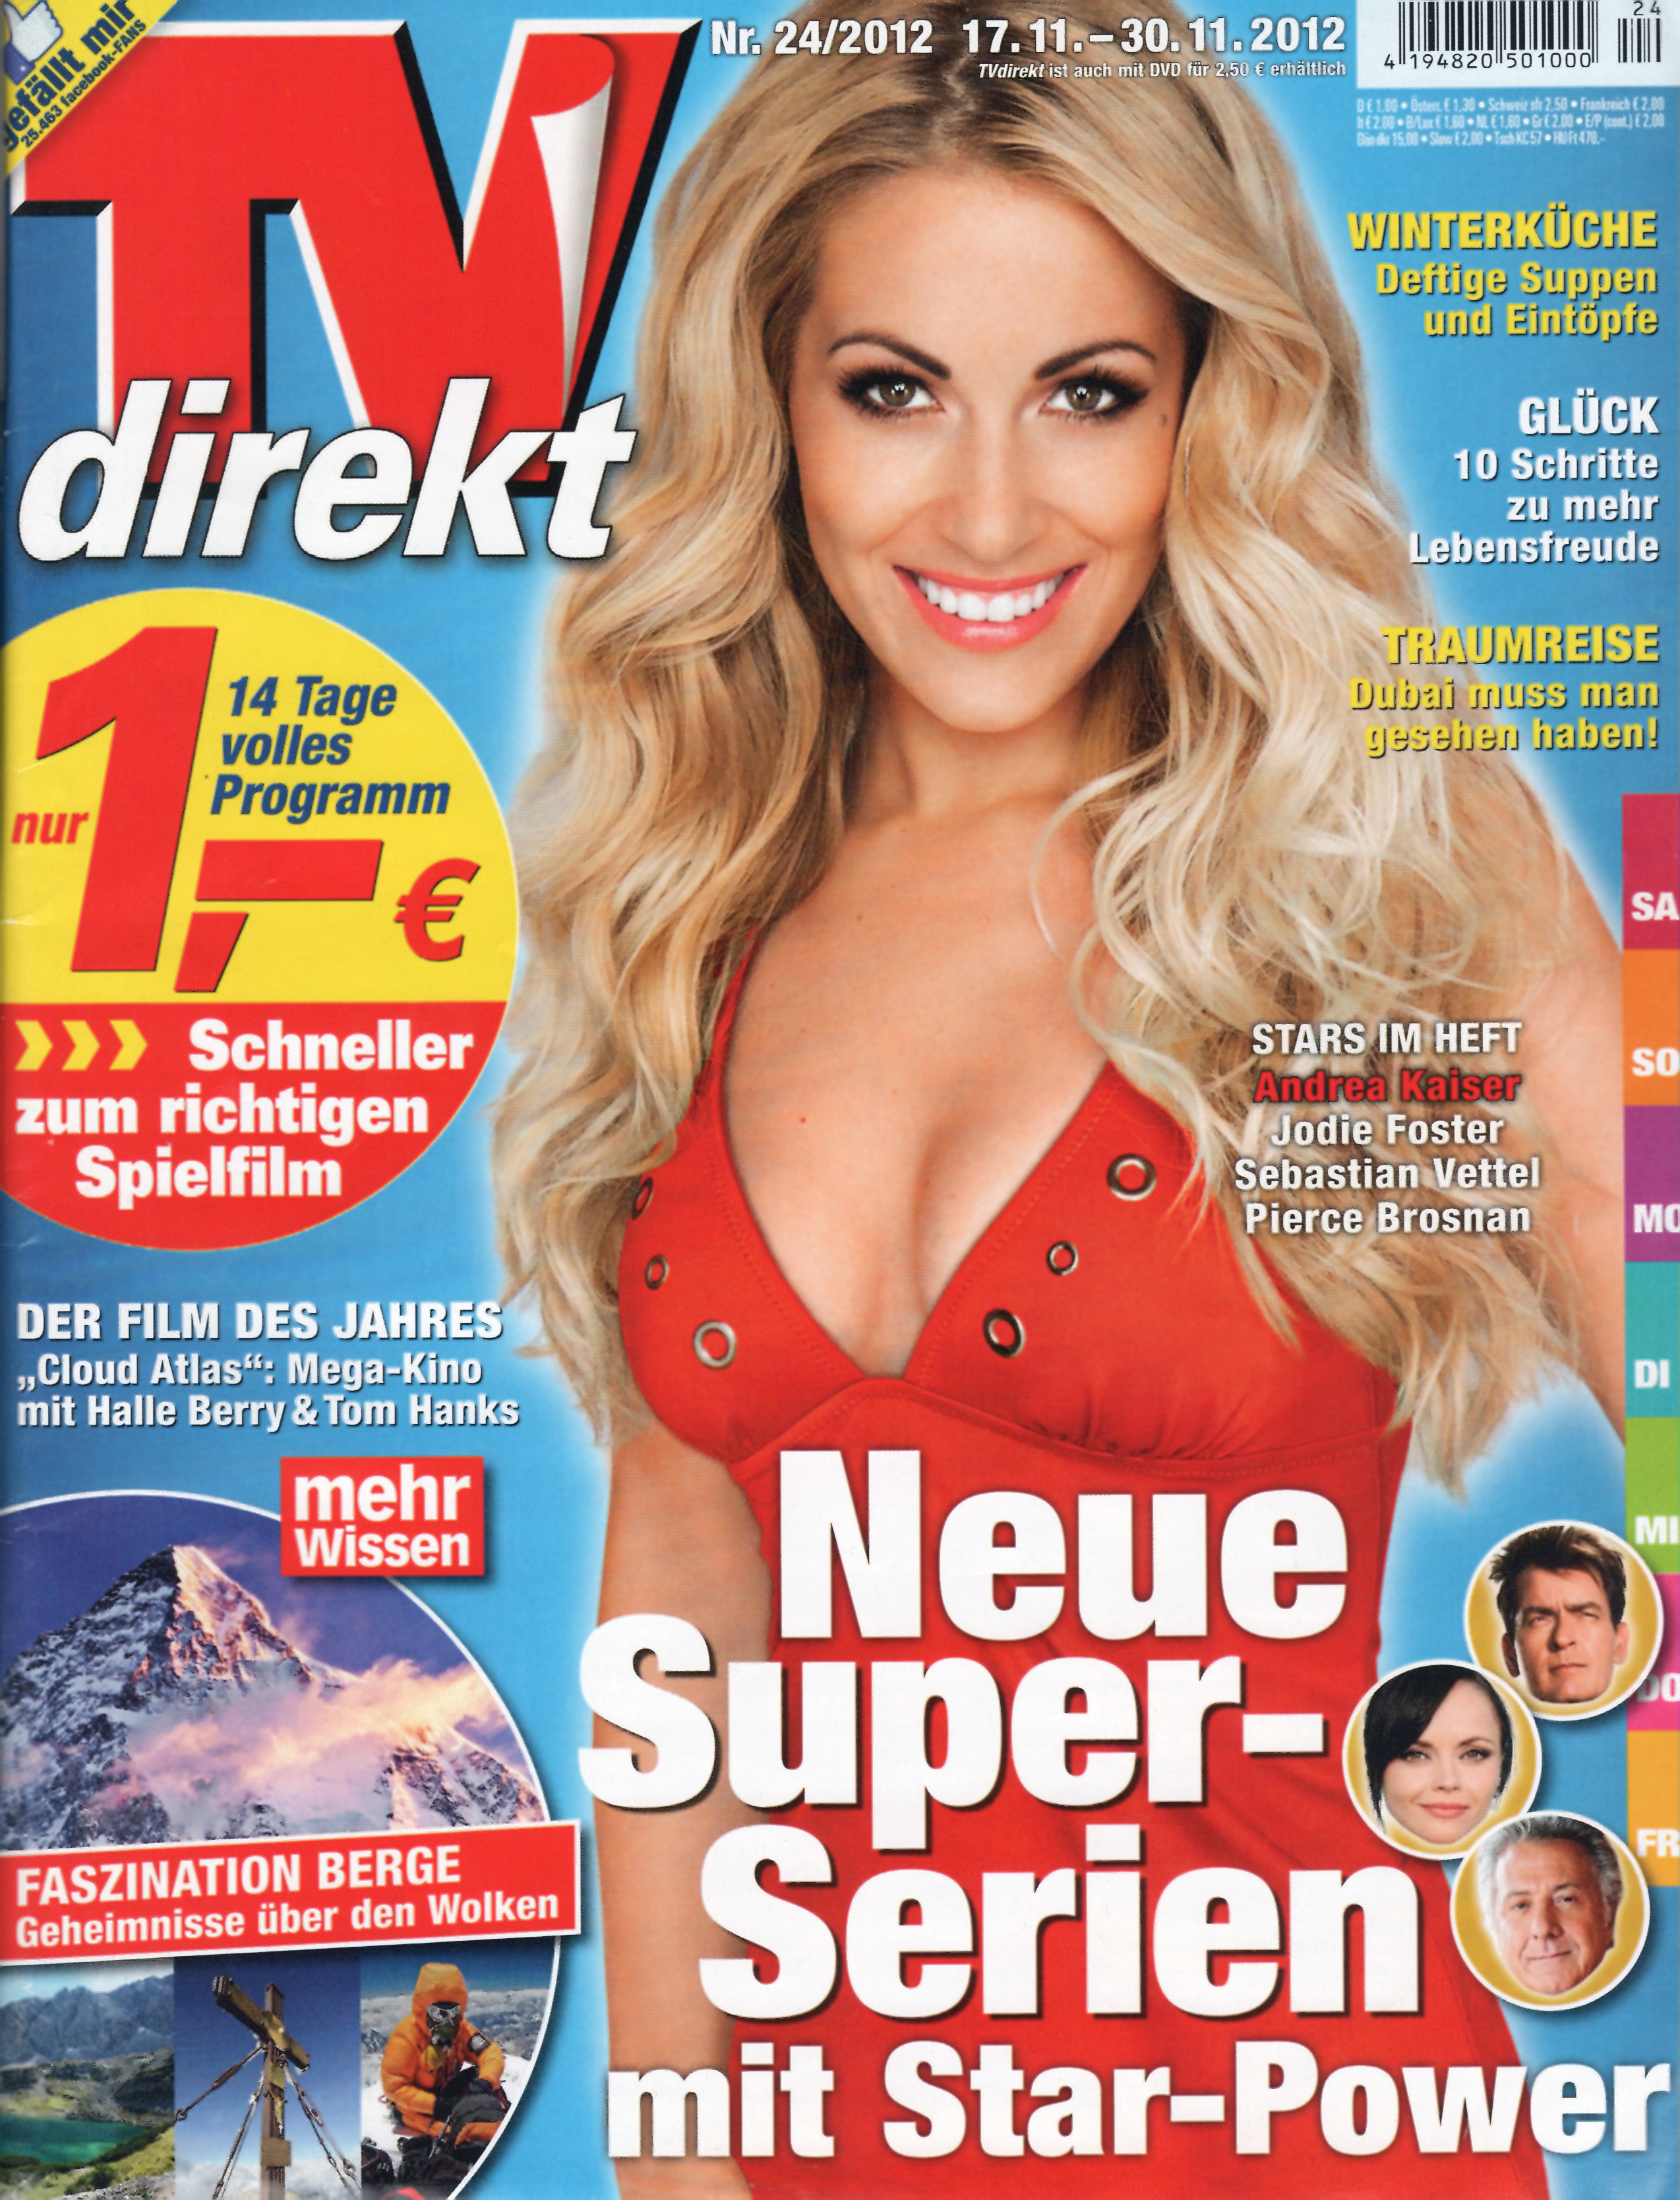 Andrea Kaiser TV direkt 24 2012 Cover